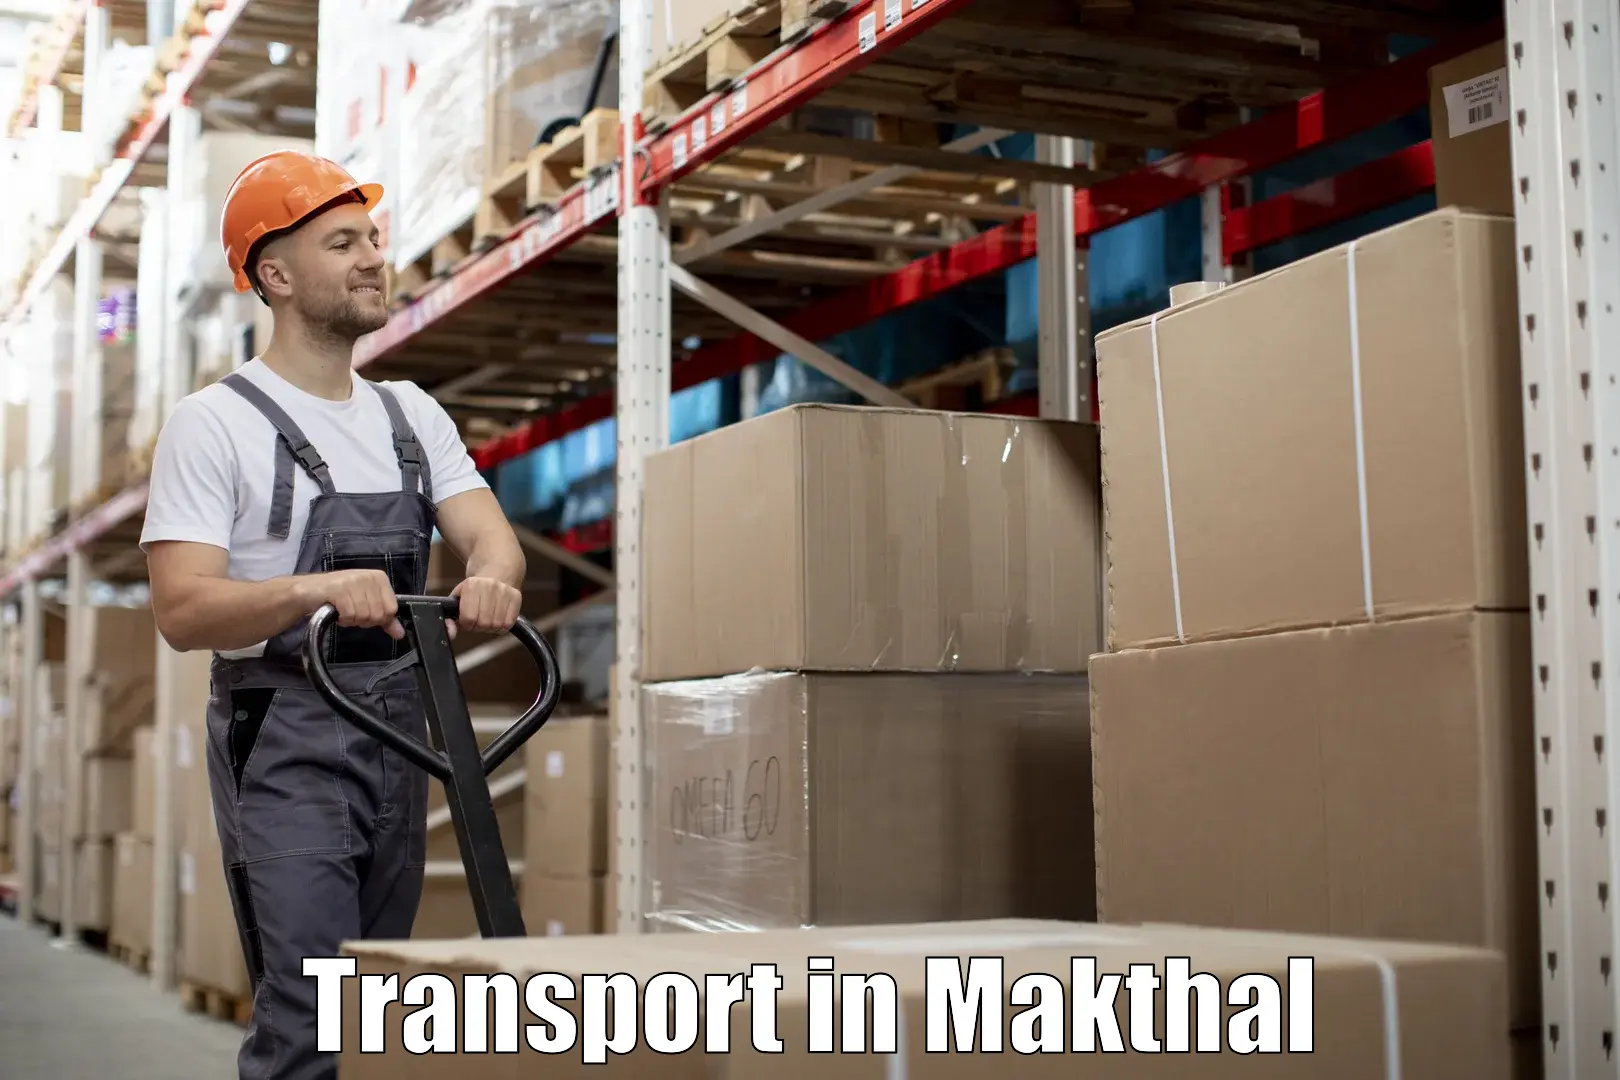 Intercity goods transport in Makthal